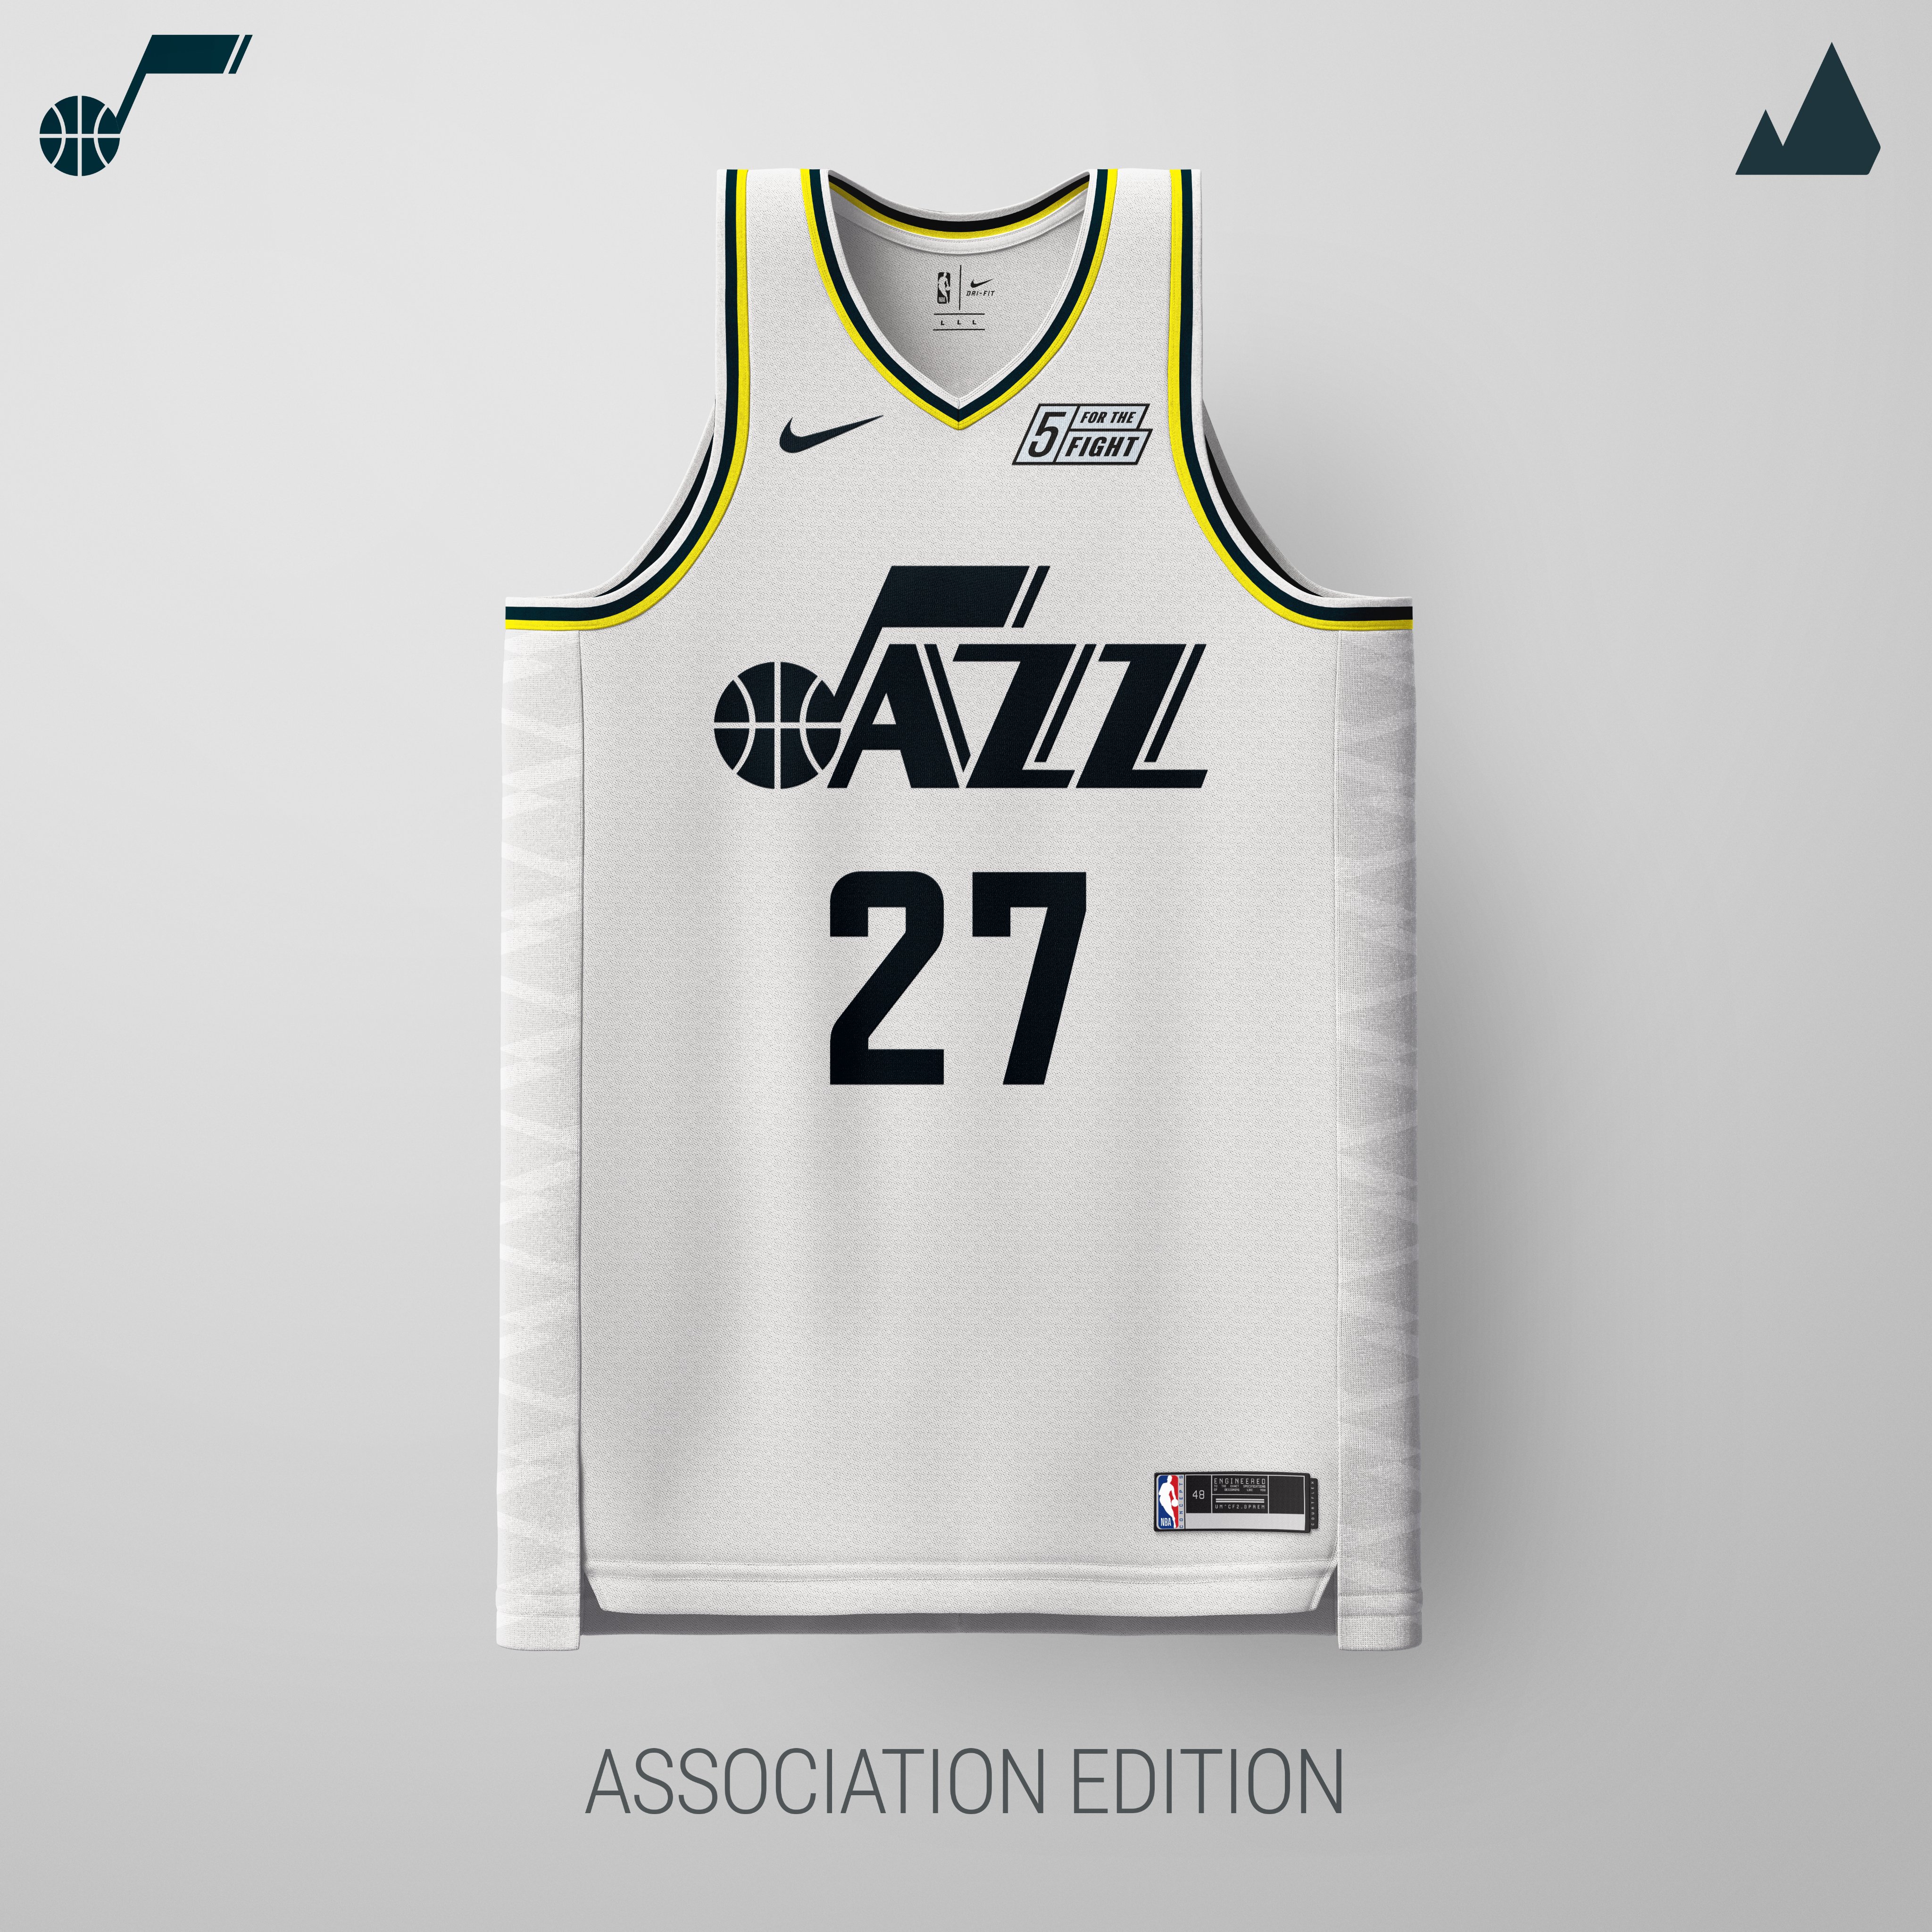 design utah jazz jersey concept